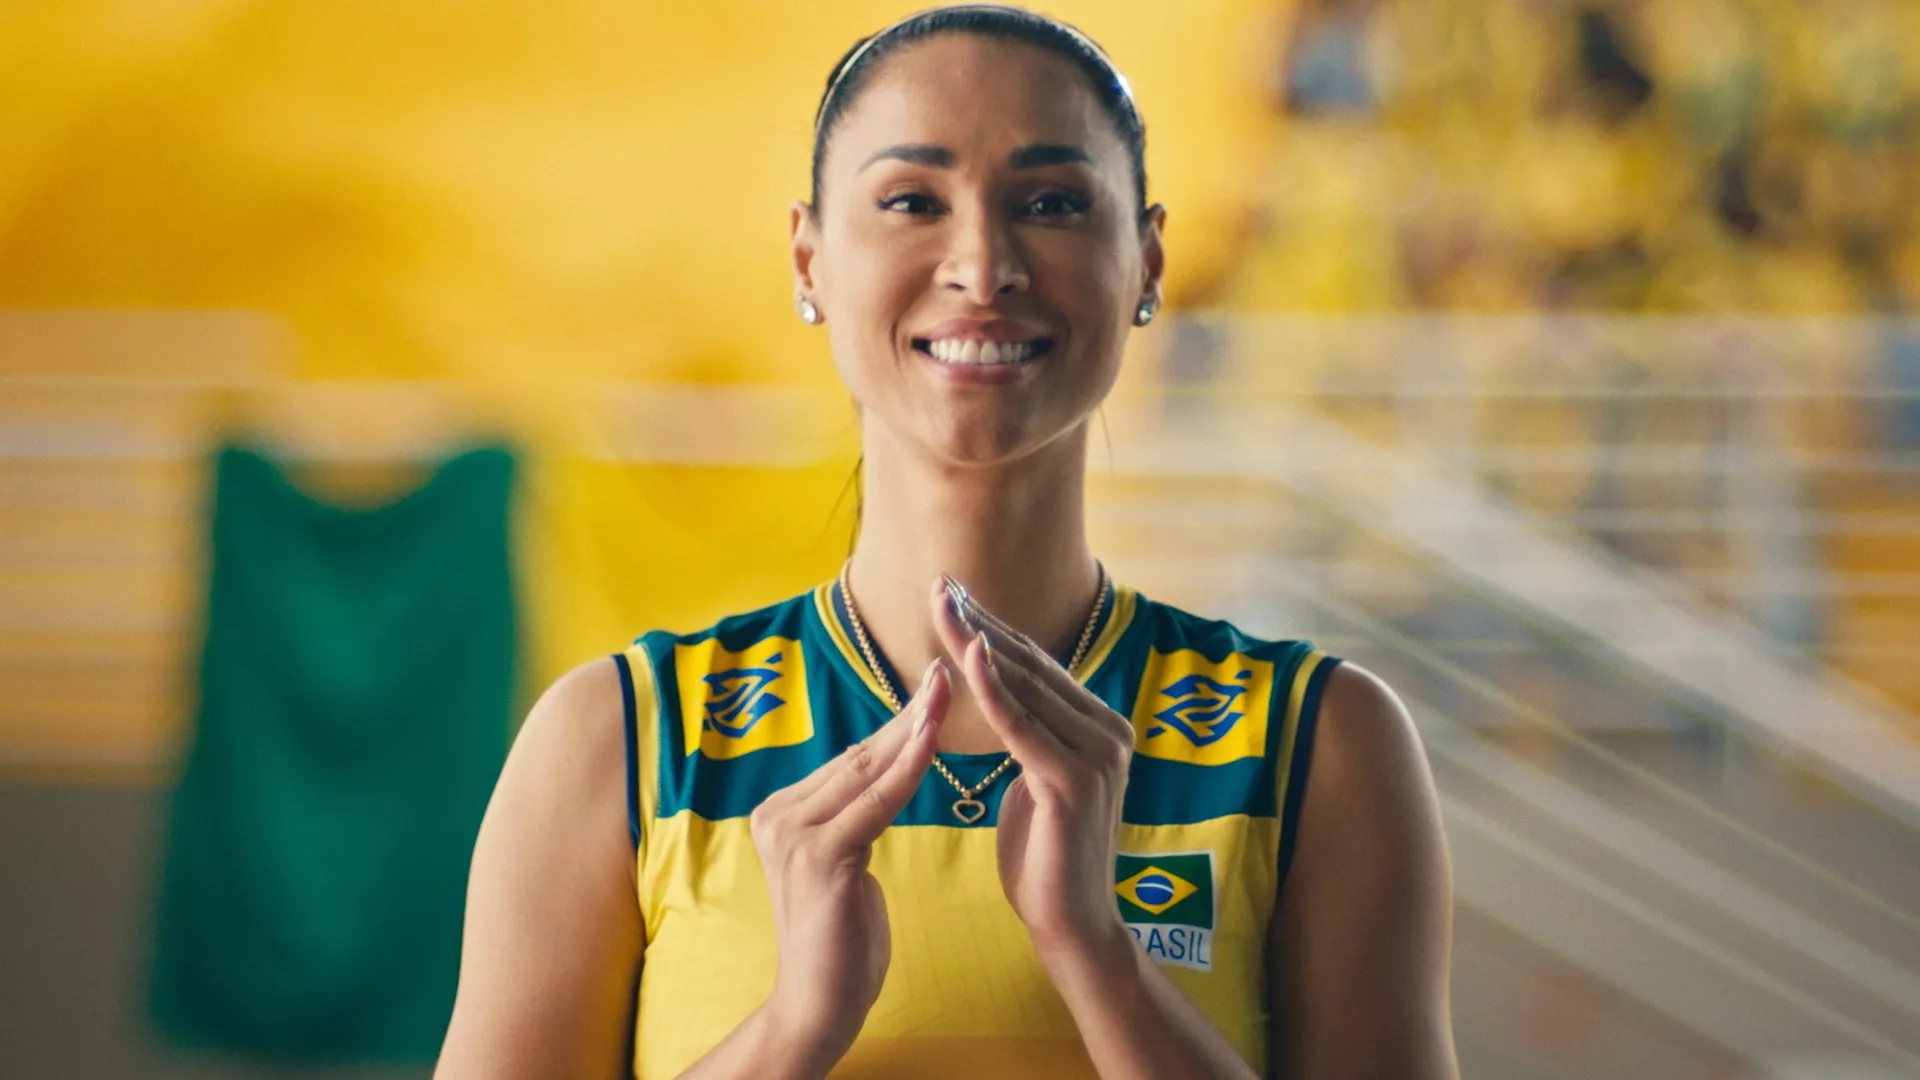 Banco do Brasil intensifica apoio ao esporte nacional com campanha sobre vôlei